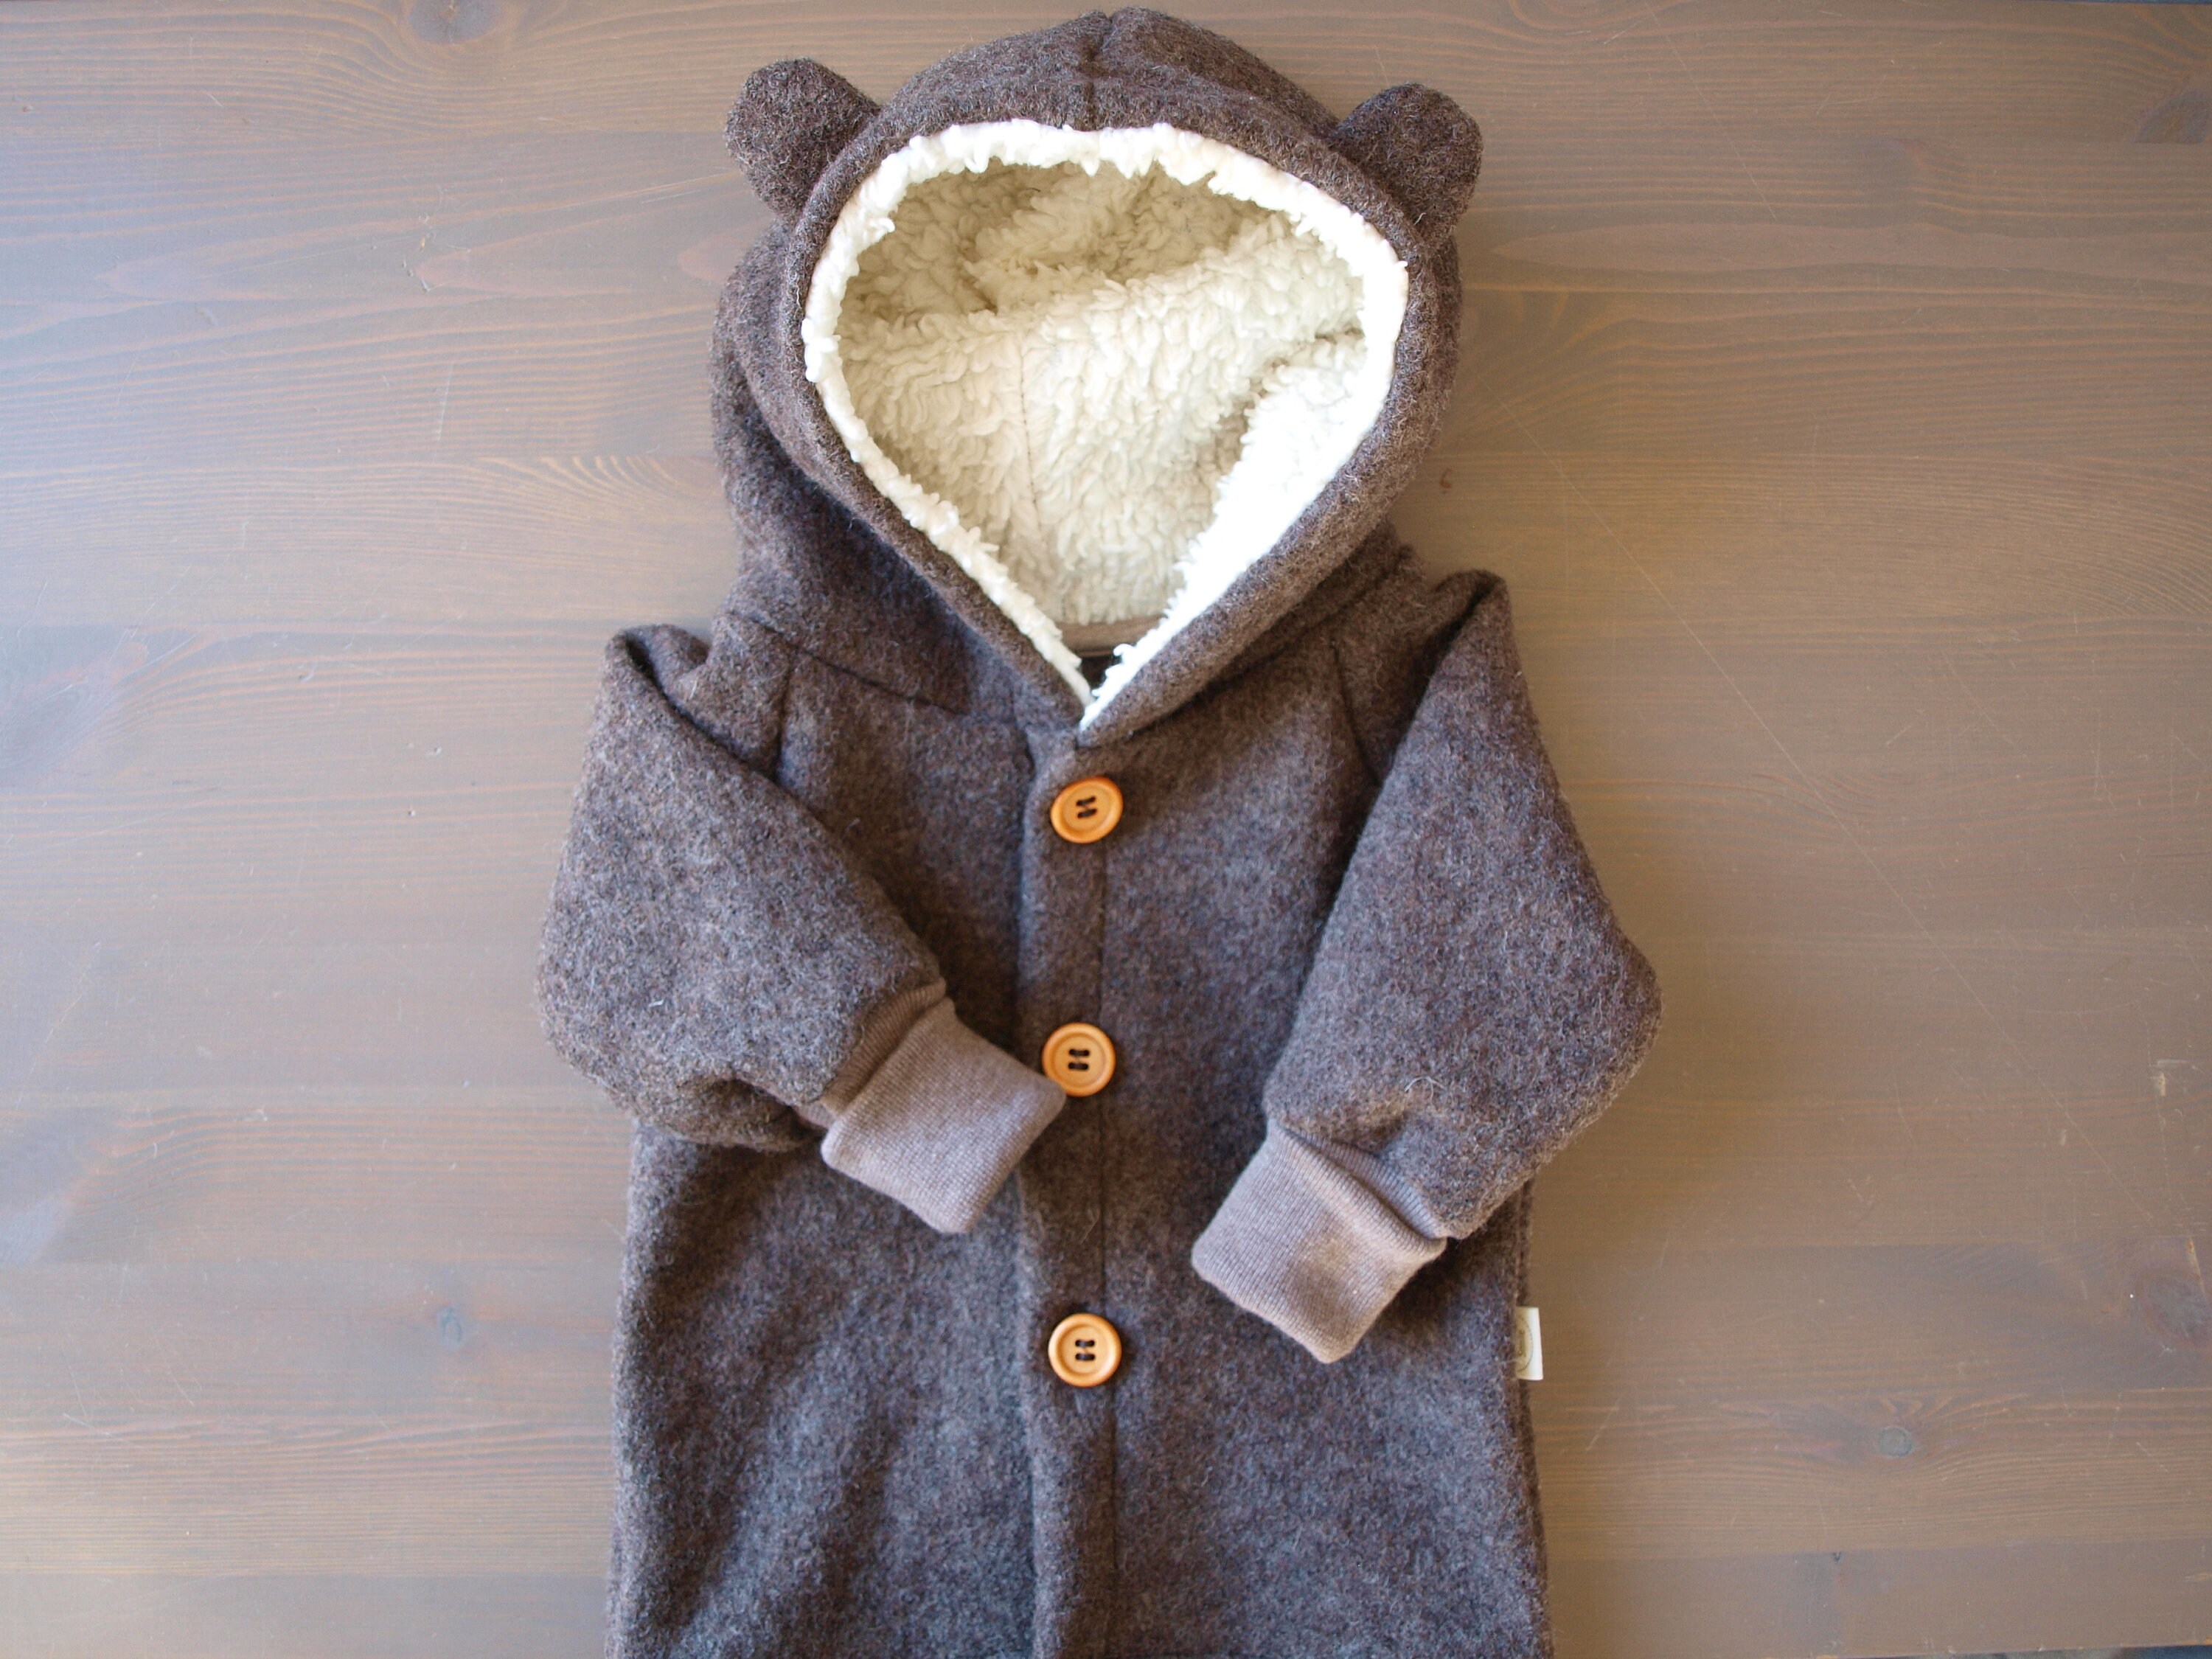 Woolen pants “Gunnar”, virgin wool – Lille & Snille